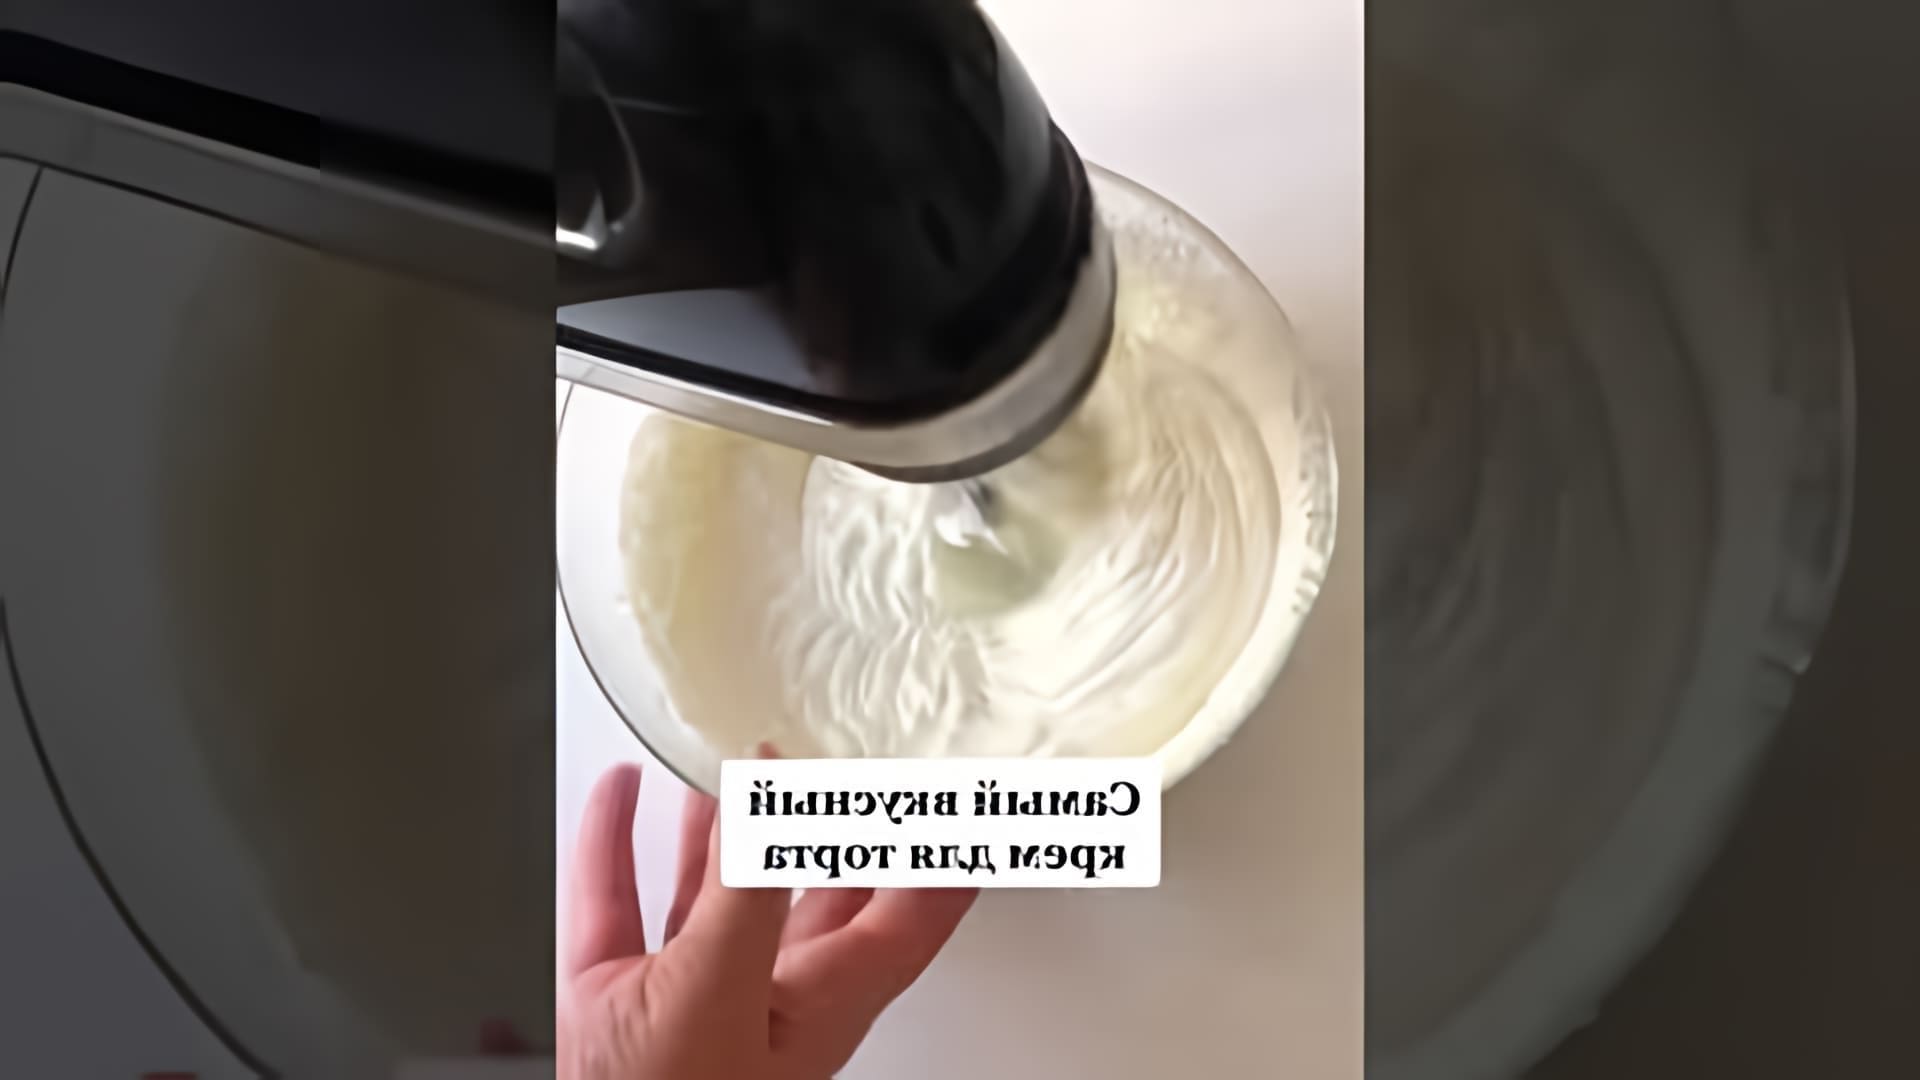 В этом видео демонстрируется рецепт крема для торта из сметаны и сливок